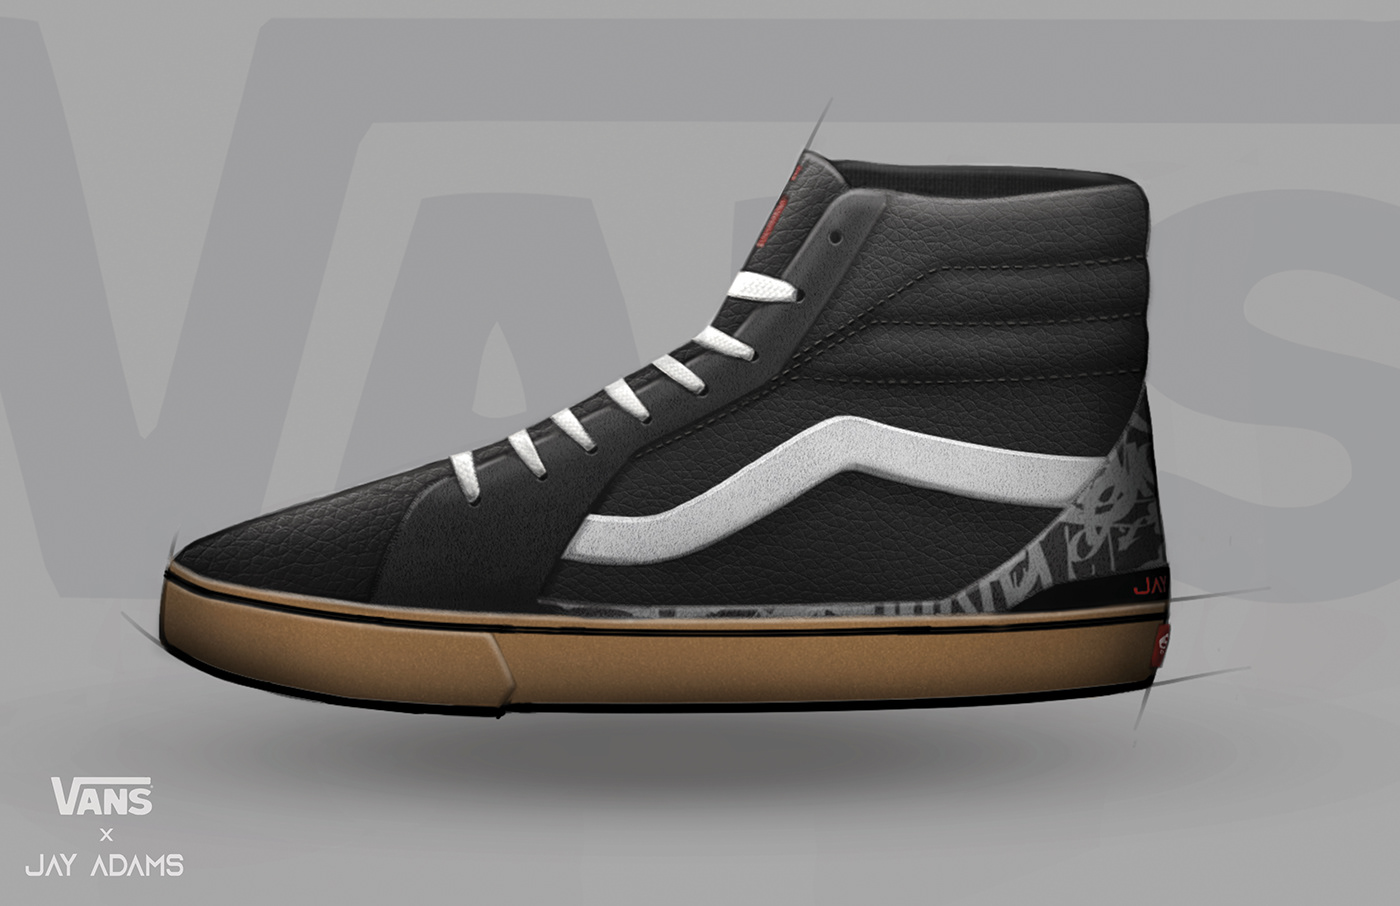 California design durable fast shoes skate skateboard sneaker surfing Vans